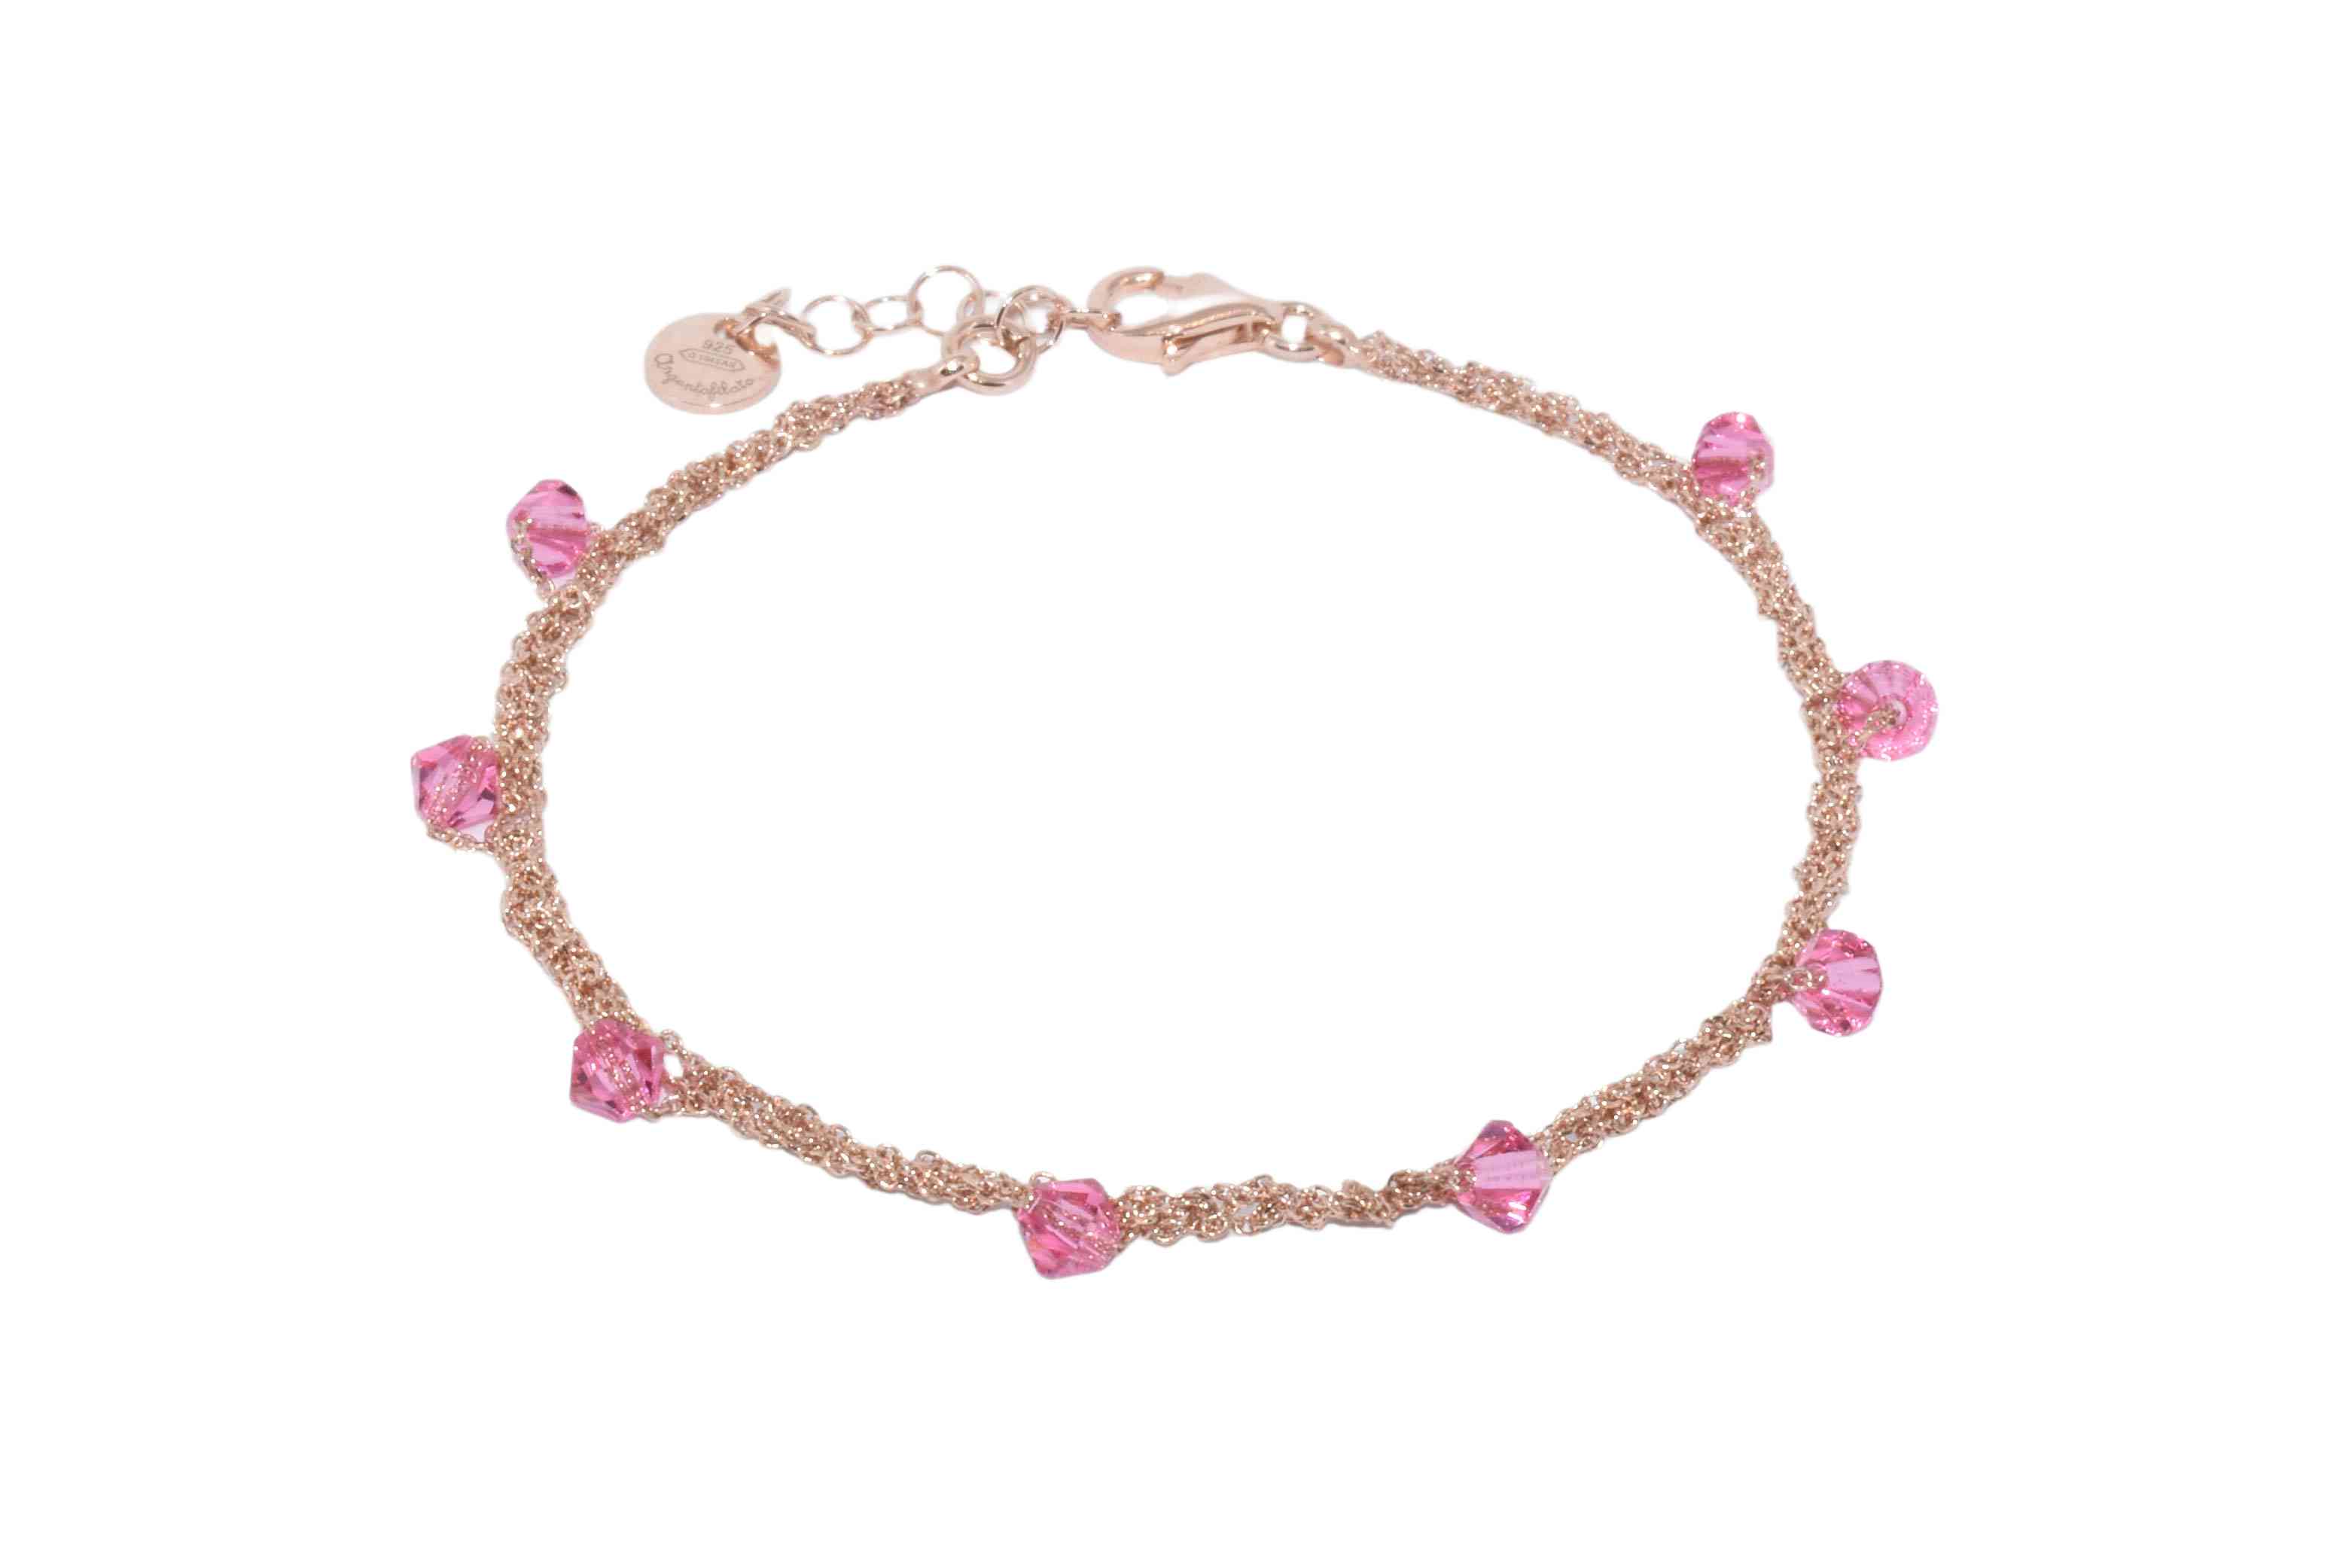 Bracciale-Uncinetto-rombi-rosa-Argentofilato-in-argento-925-oro-rosa